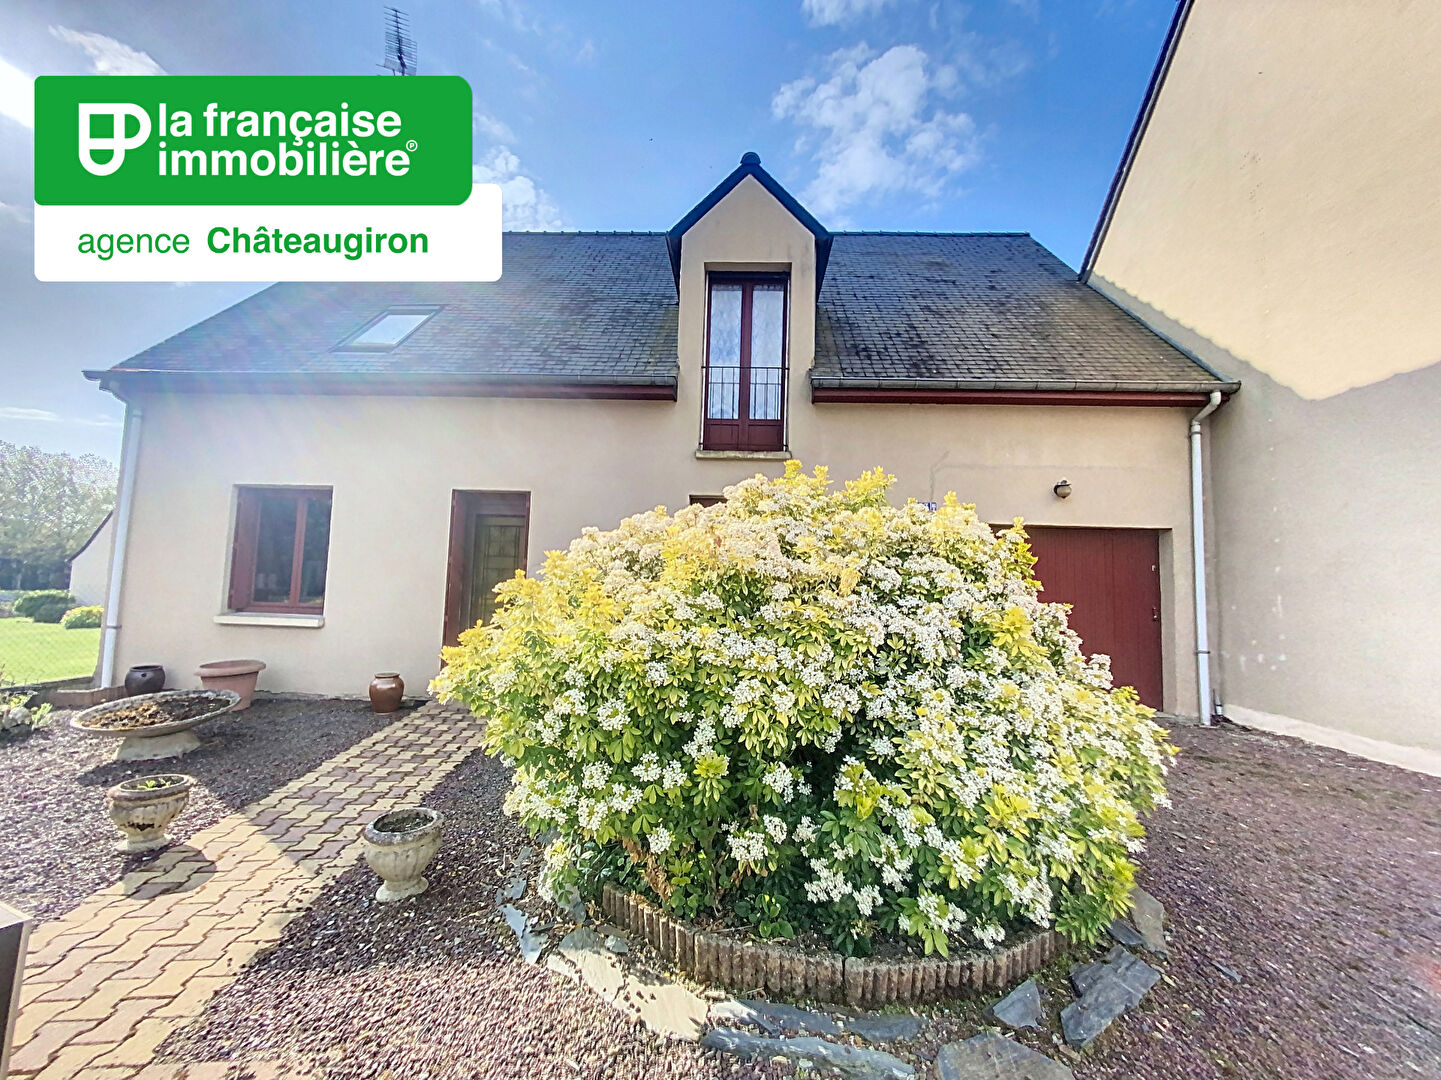 Vente Maison 104m² à Châteaugiron (35410) - La Française Immobilière